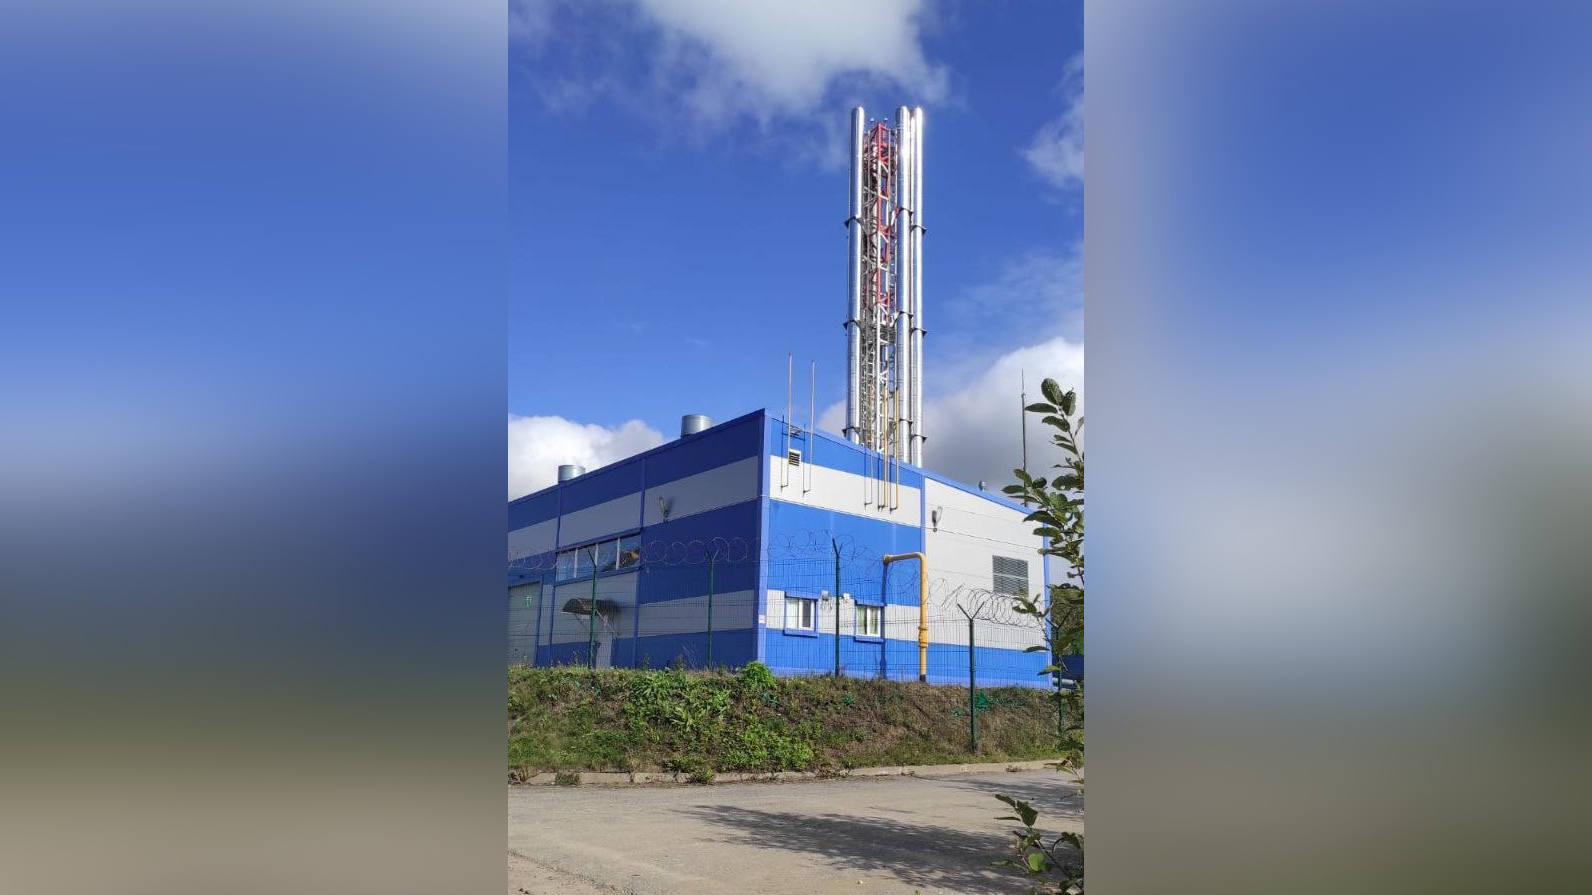 Филиал АО «Газпром теплоэнерго» в Ленинградской области завершает работы на тепловых сетях в Ивангороде